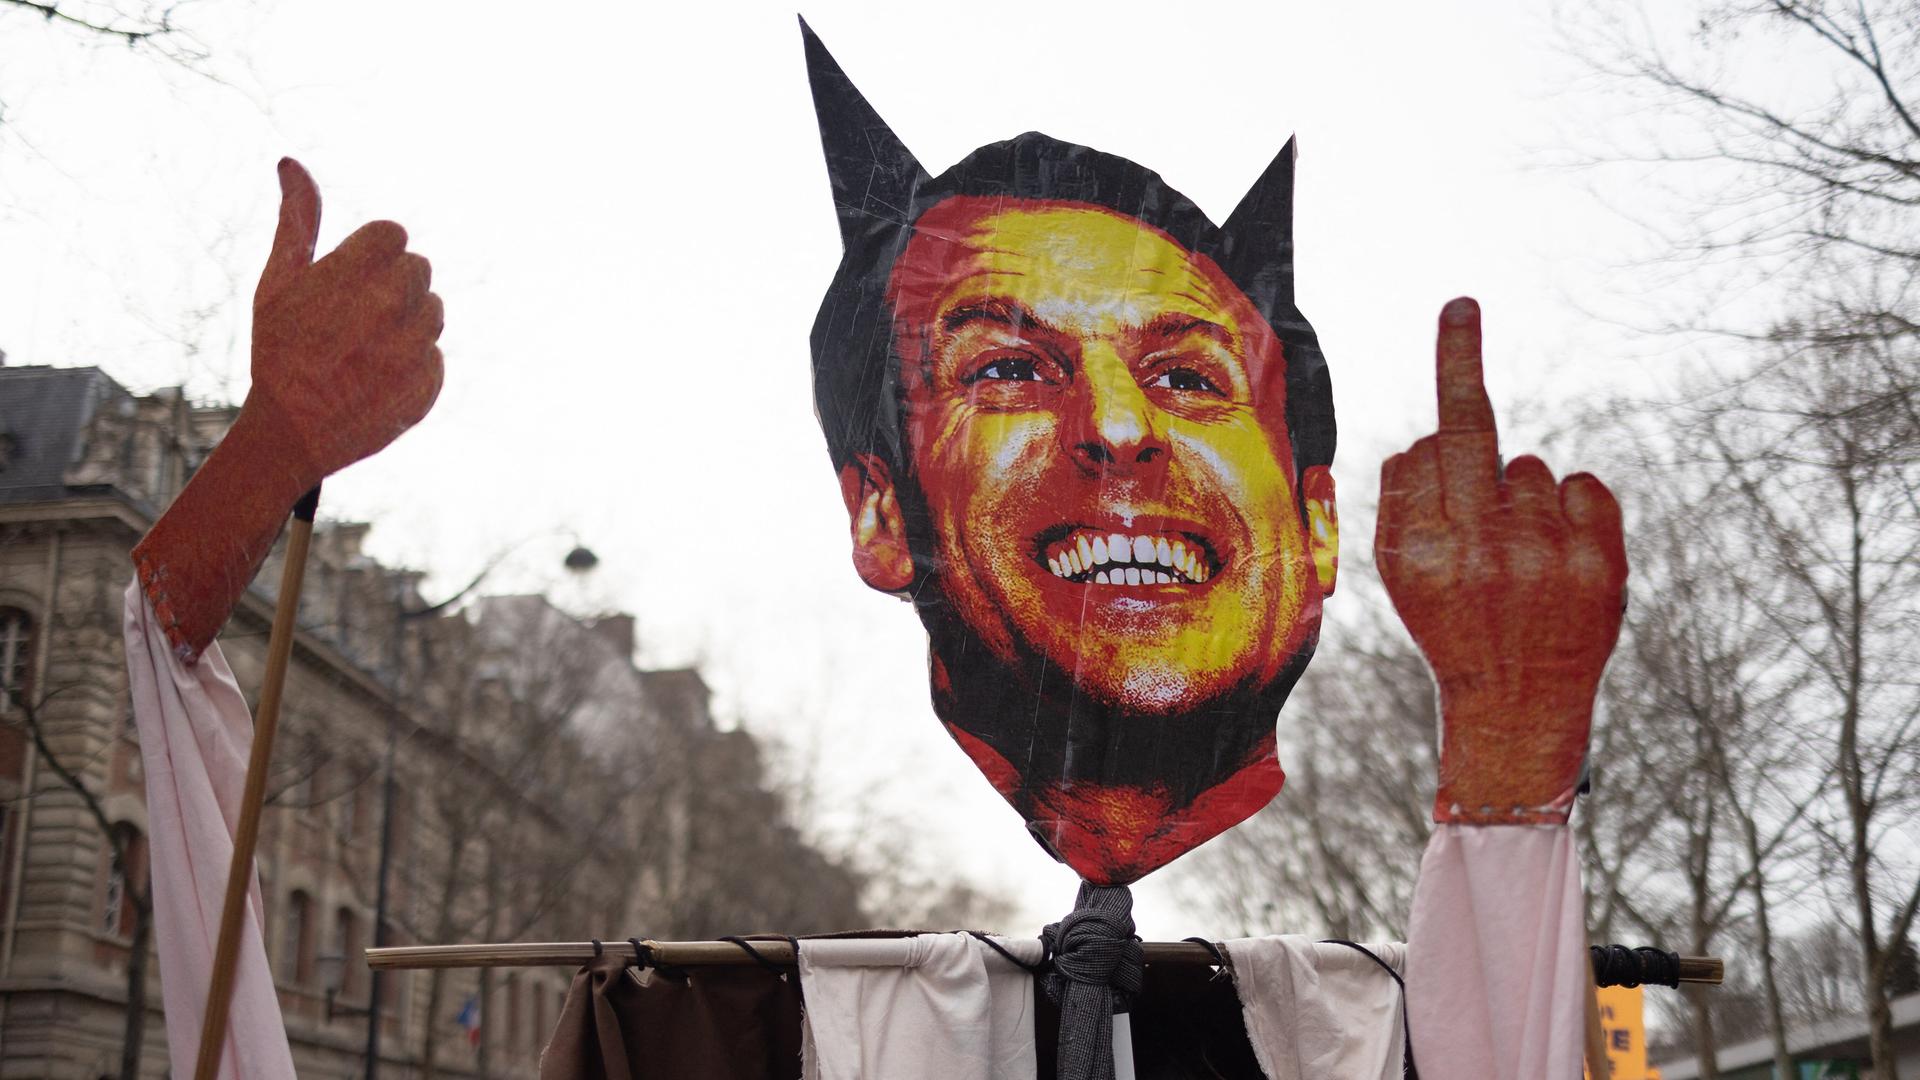 Protestler halten ein Schild hoch, das Frankreichs Präsident Macron mit Teufelshörnern und ausgestrecktem Mittelfinger zeigt